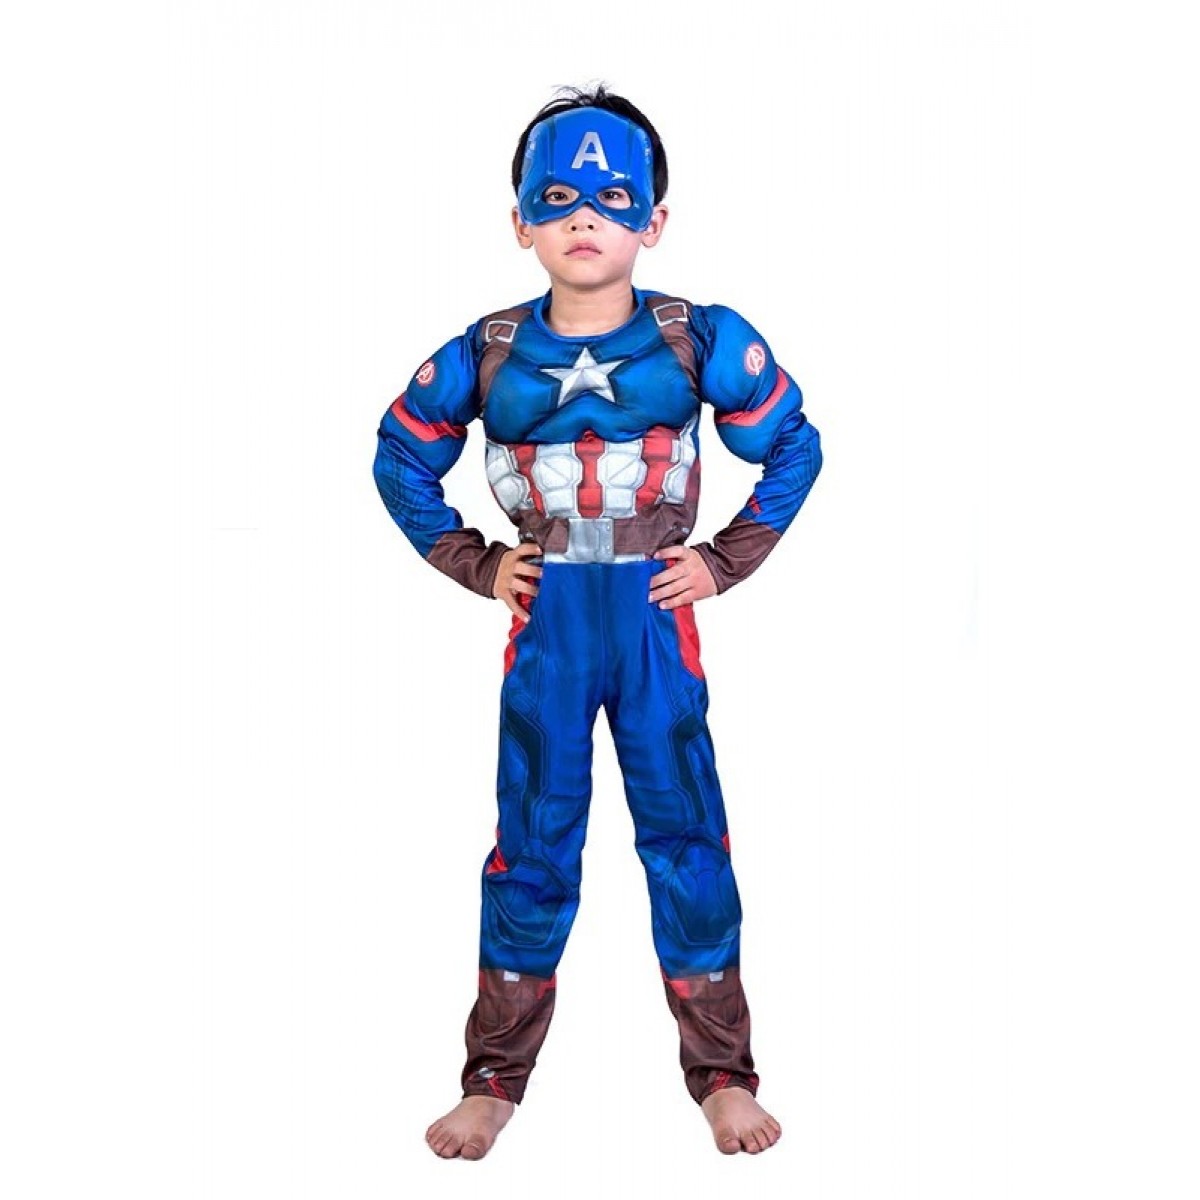 Карнавальный костюм Капитан Америка с мускулатурой, Мстители, MK11056